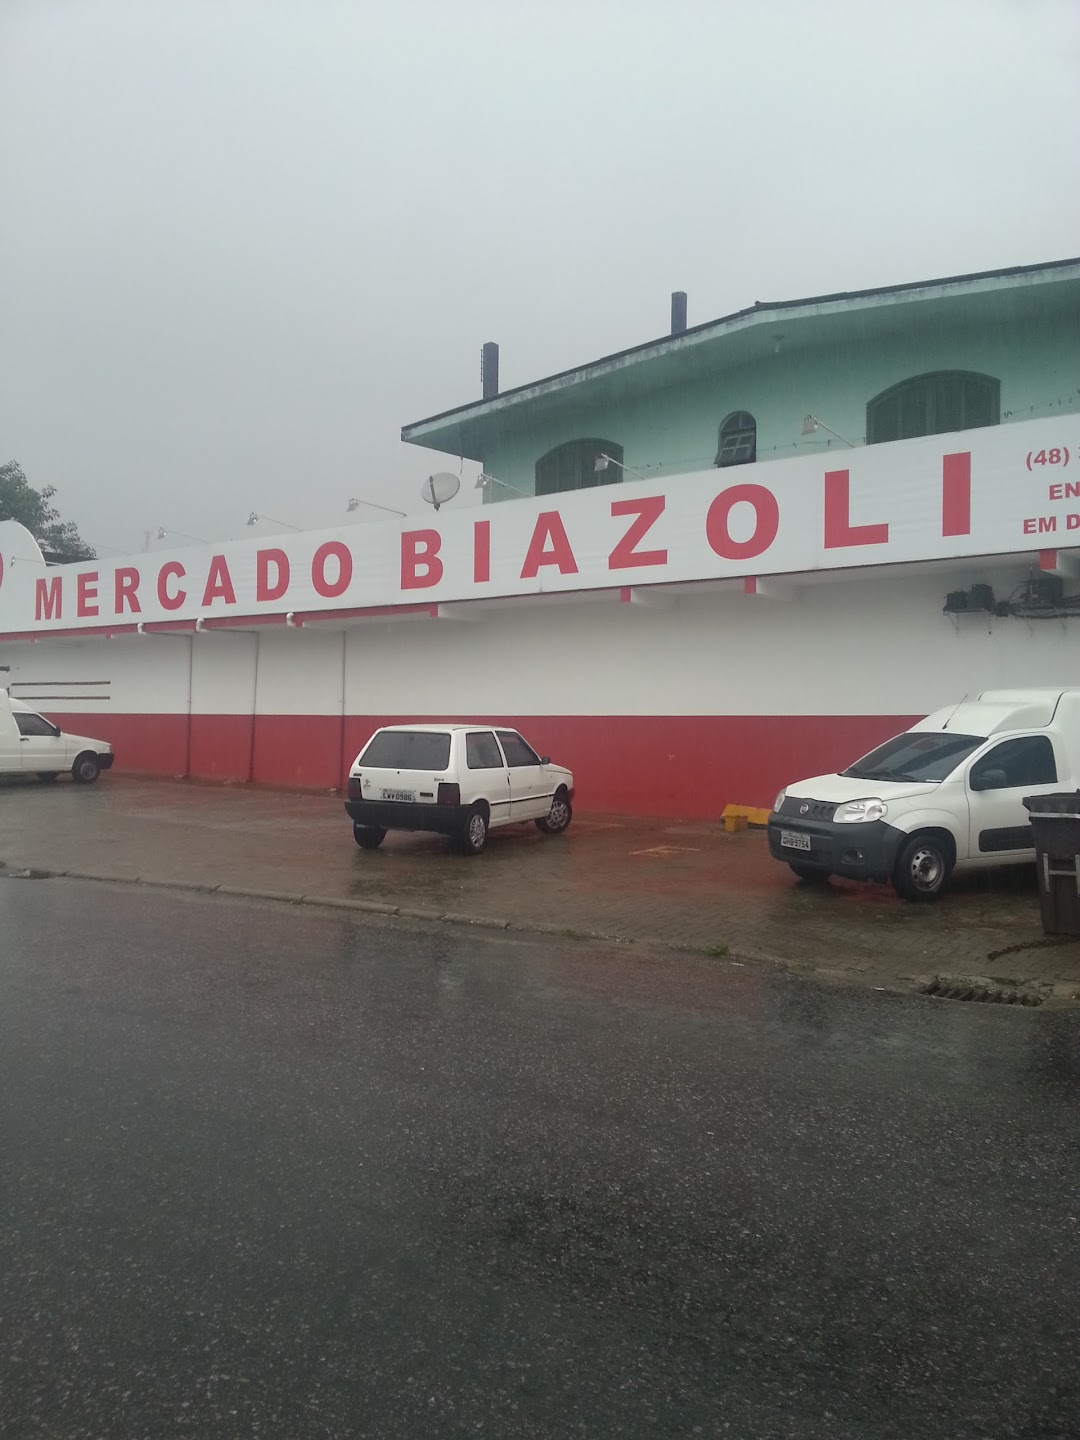 Mercado Biazoli